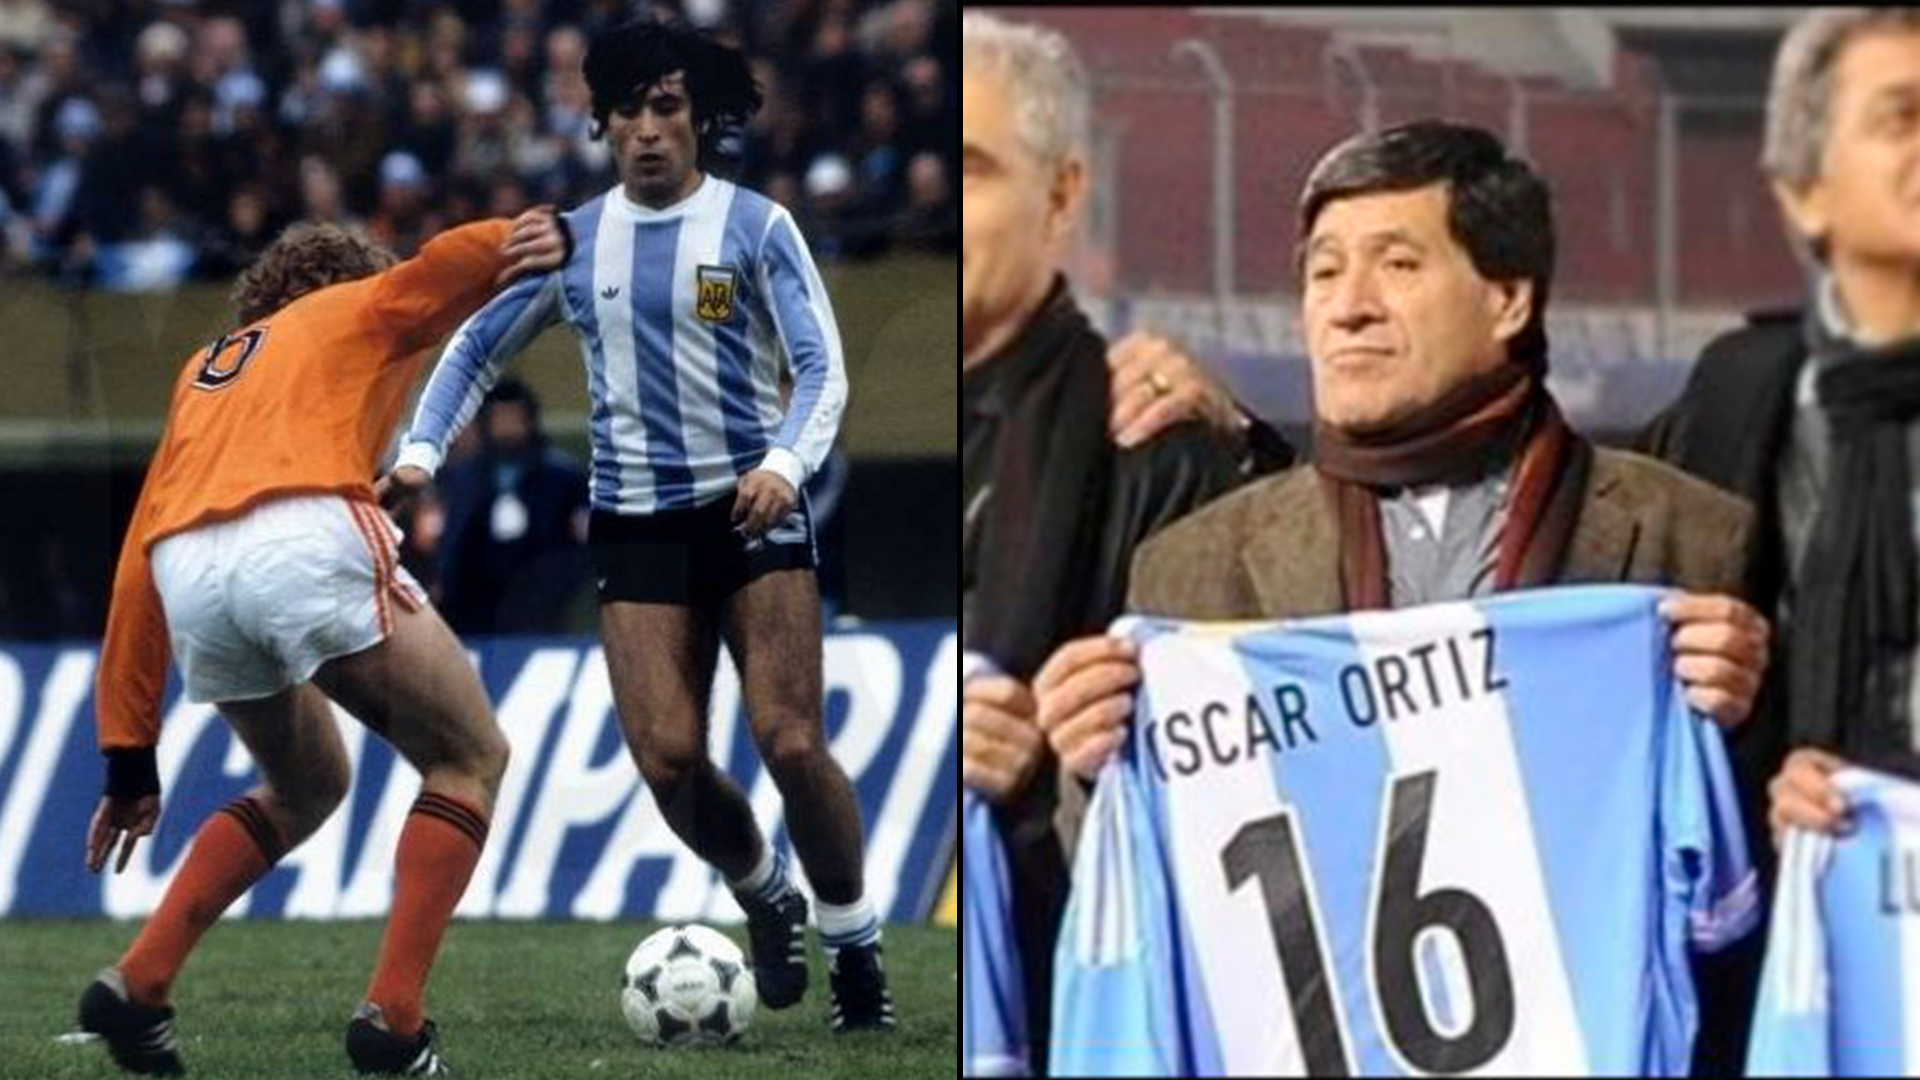 Oscar Ortiz  Argentinien Weltmeister 1978 Autogrammkarte nicht signiert 396074 